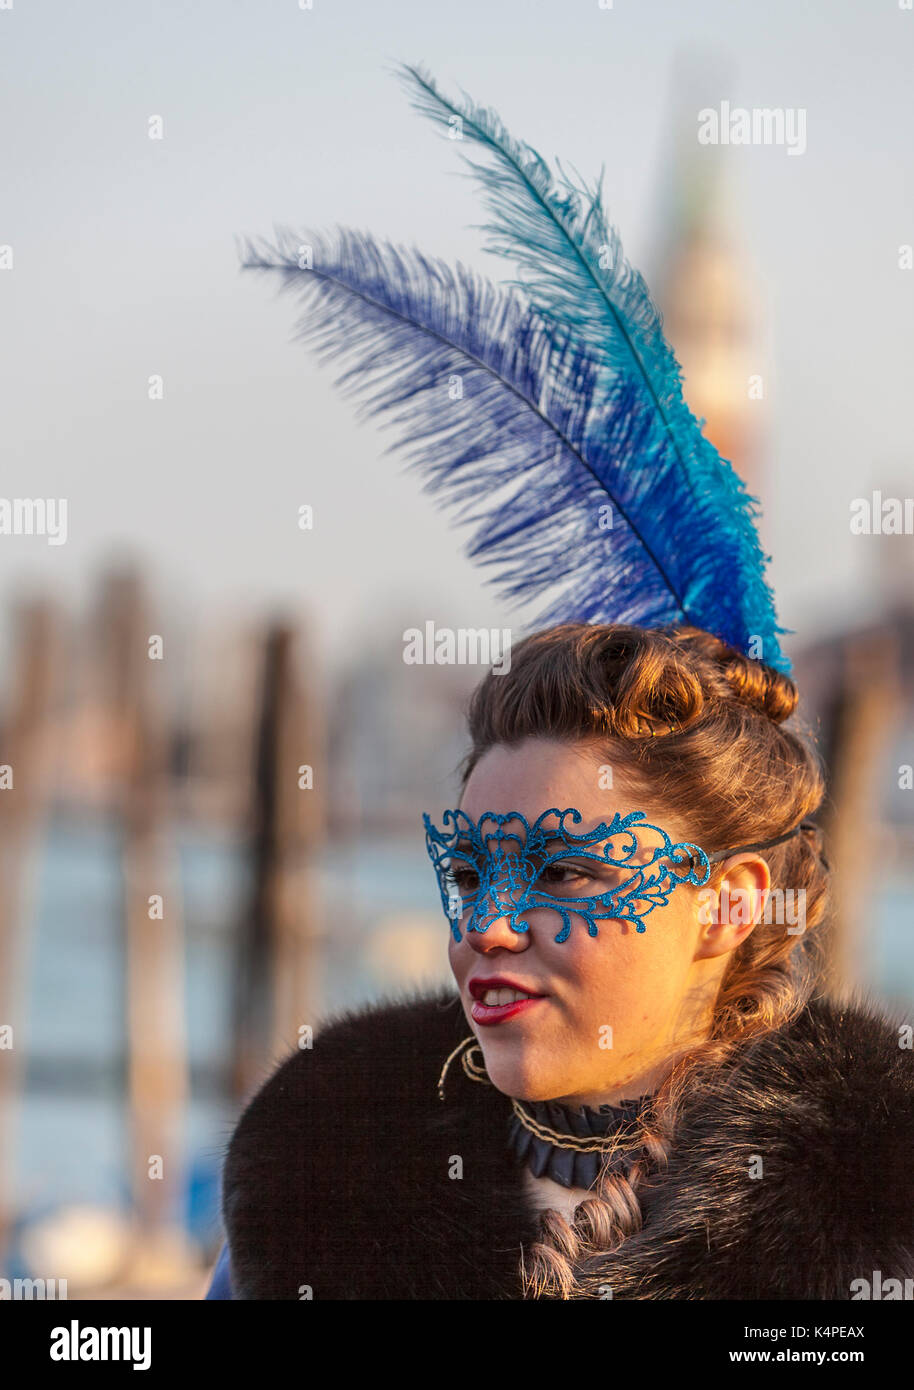 Venezia, Italia- febbraio 18th, 2012: ambientale ritratto di una giovane donna con blue colombina maschera e piume durante il carnevale di Venezia giorni. Foto Stock